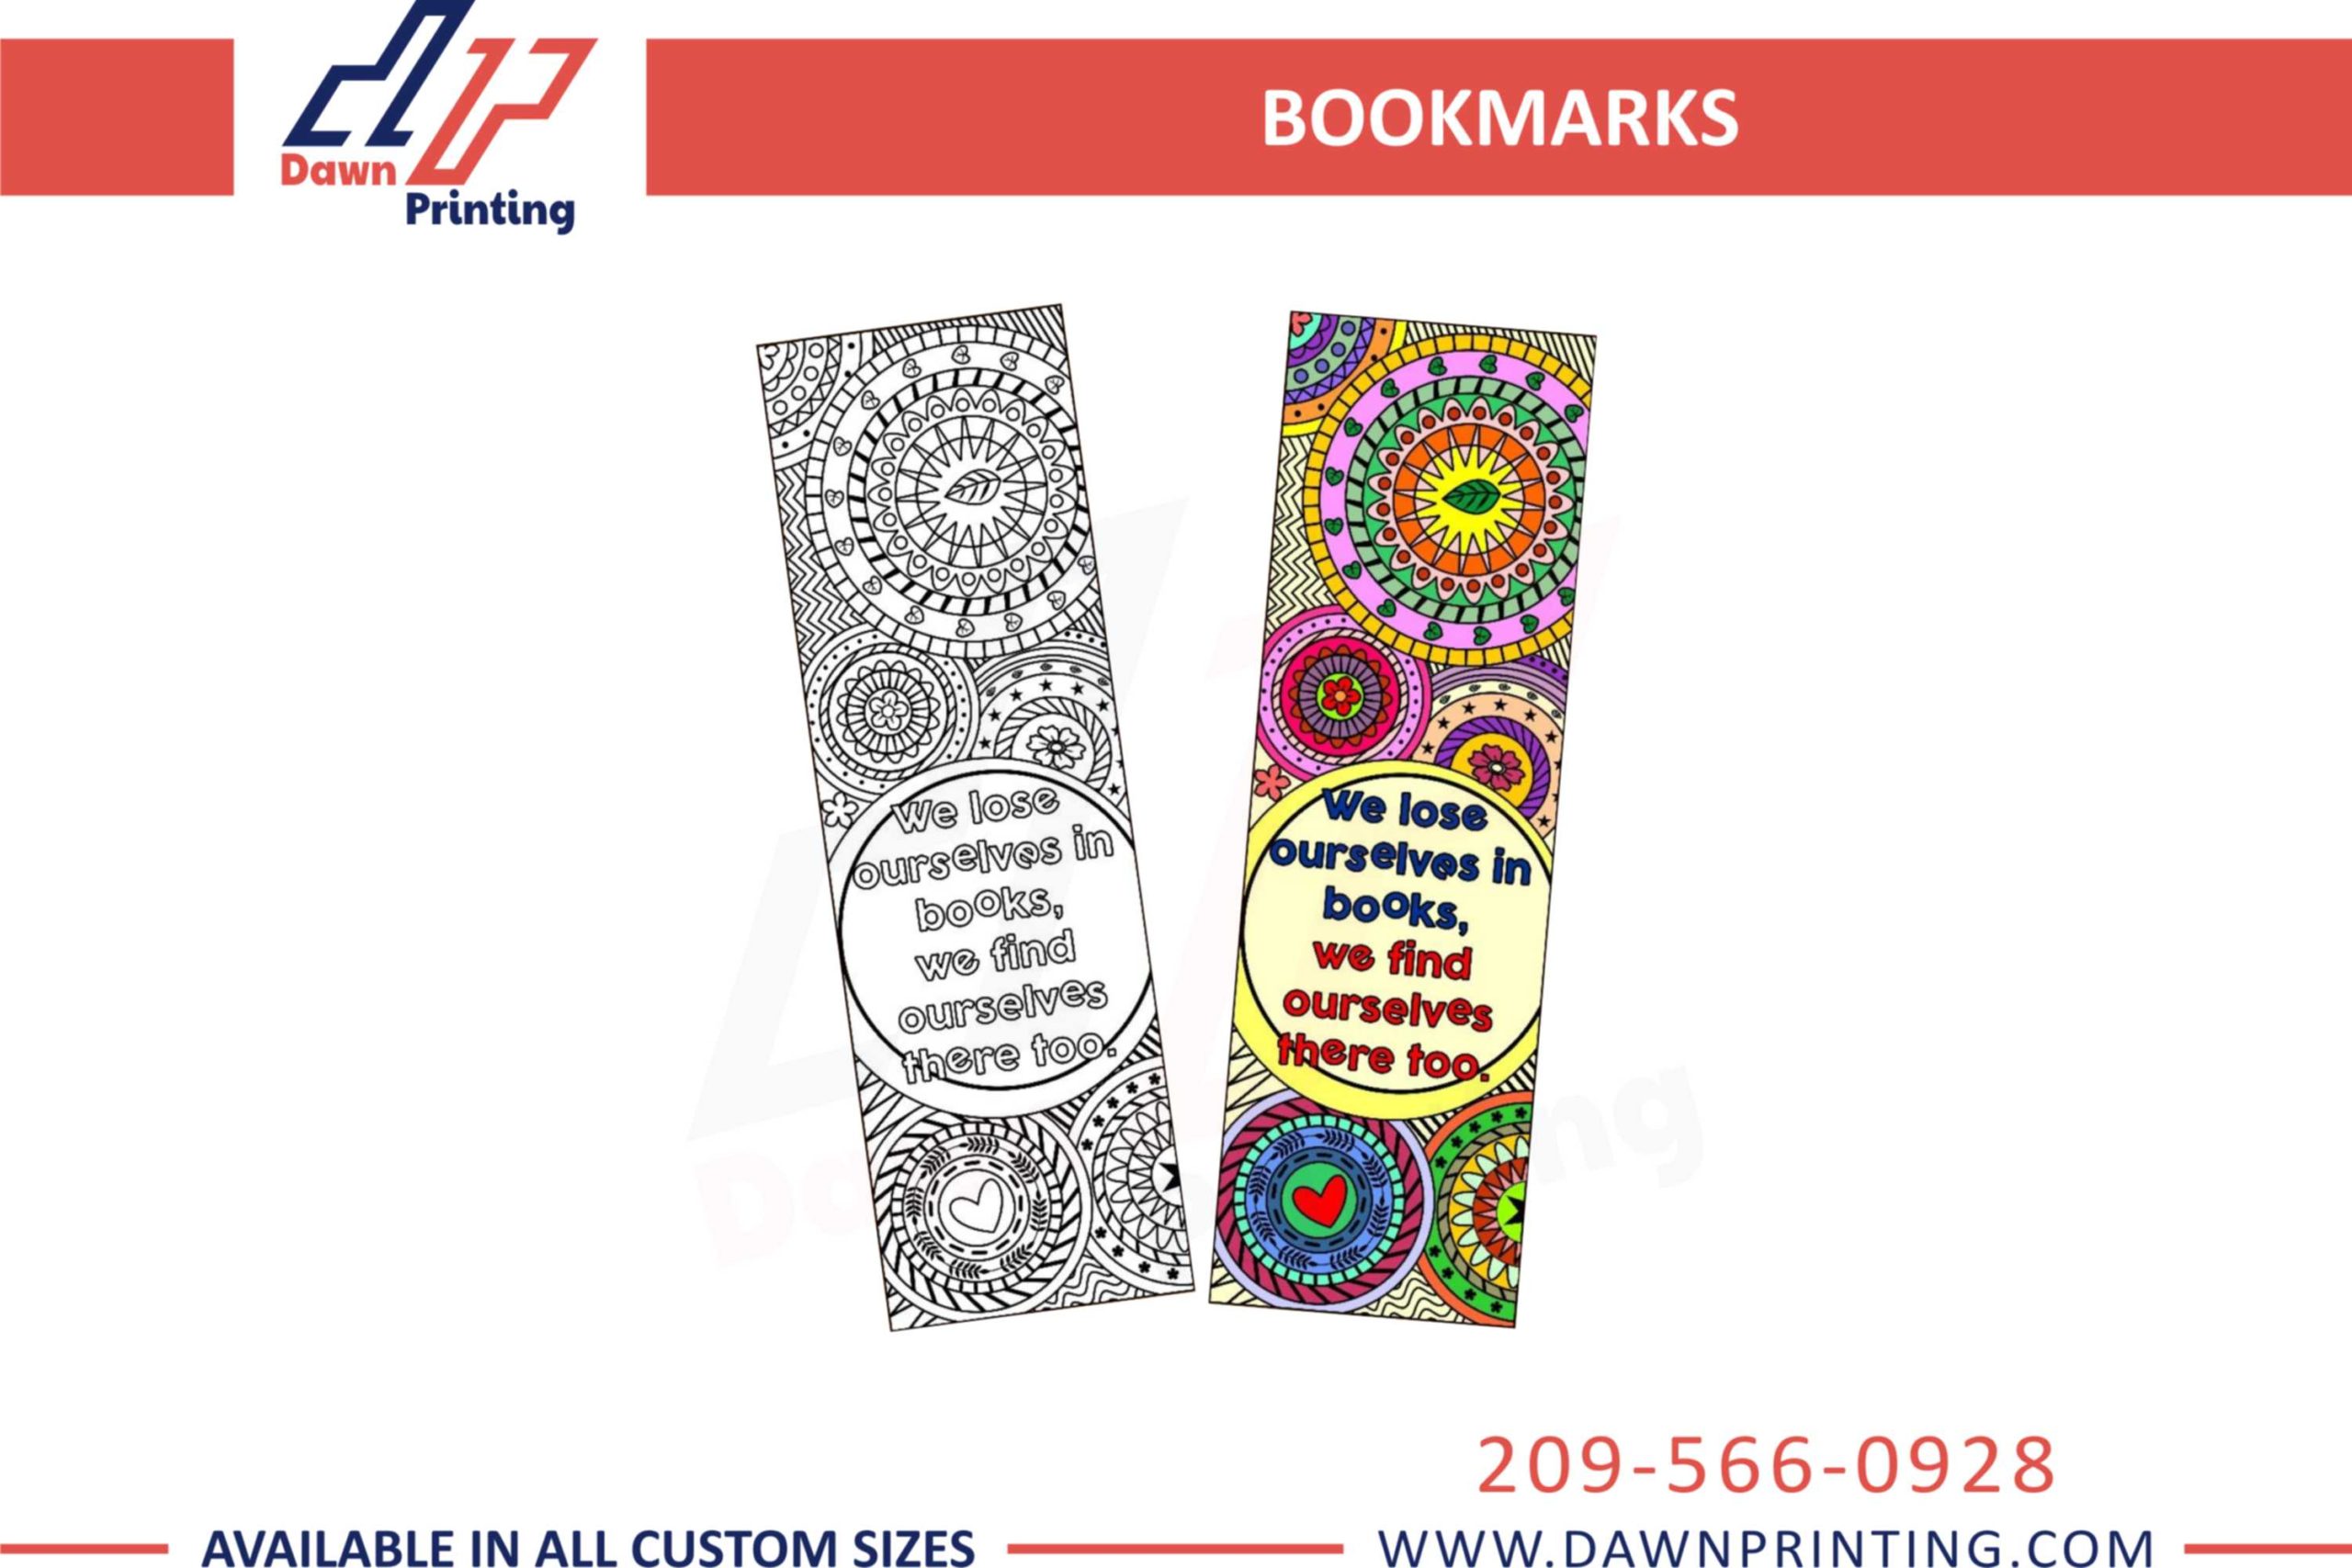 Custom Printed Bookmarks - Dawn Printing